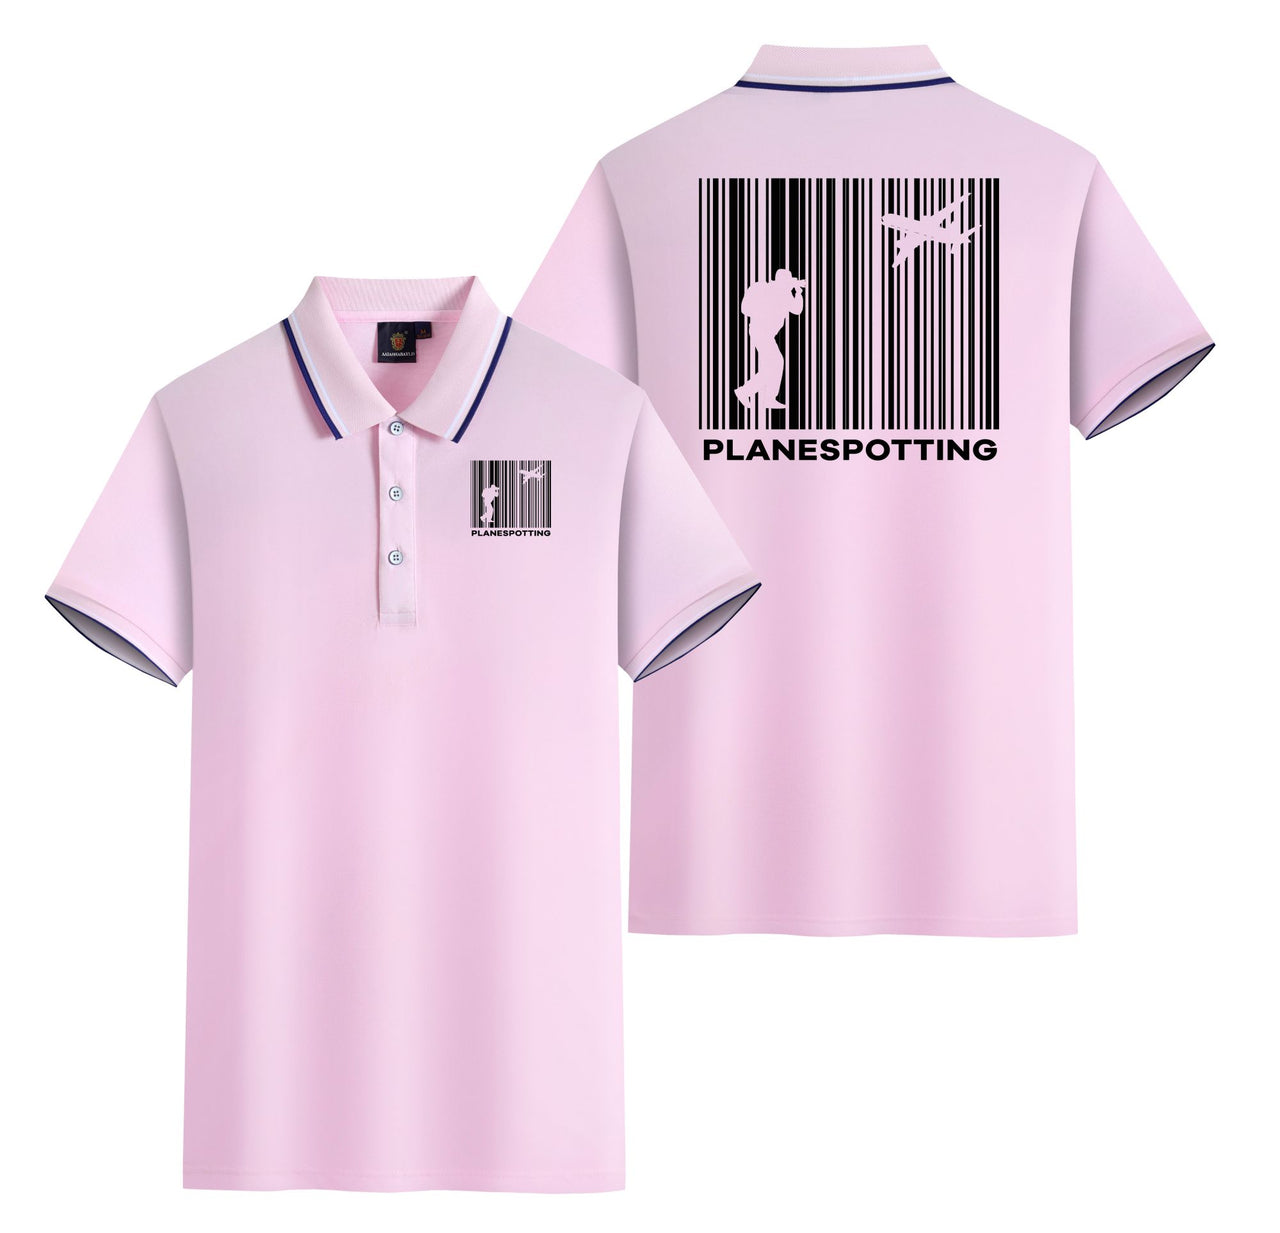 Planespotting Designed Stylish Polo T-Shirts (Double-Side)